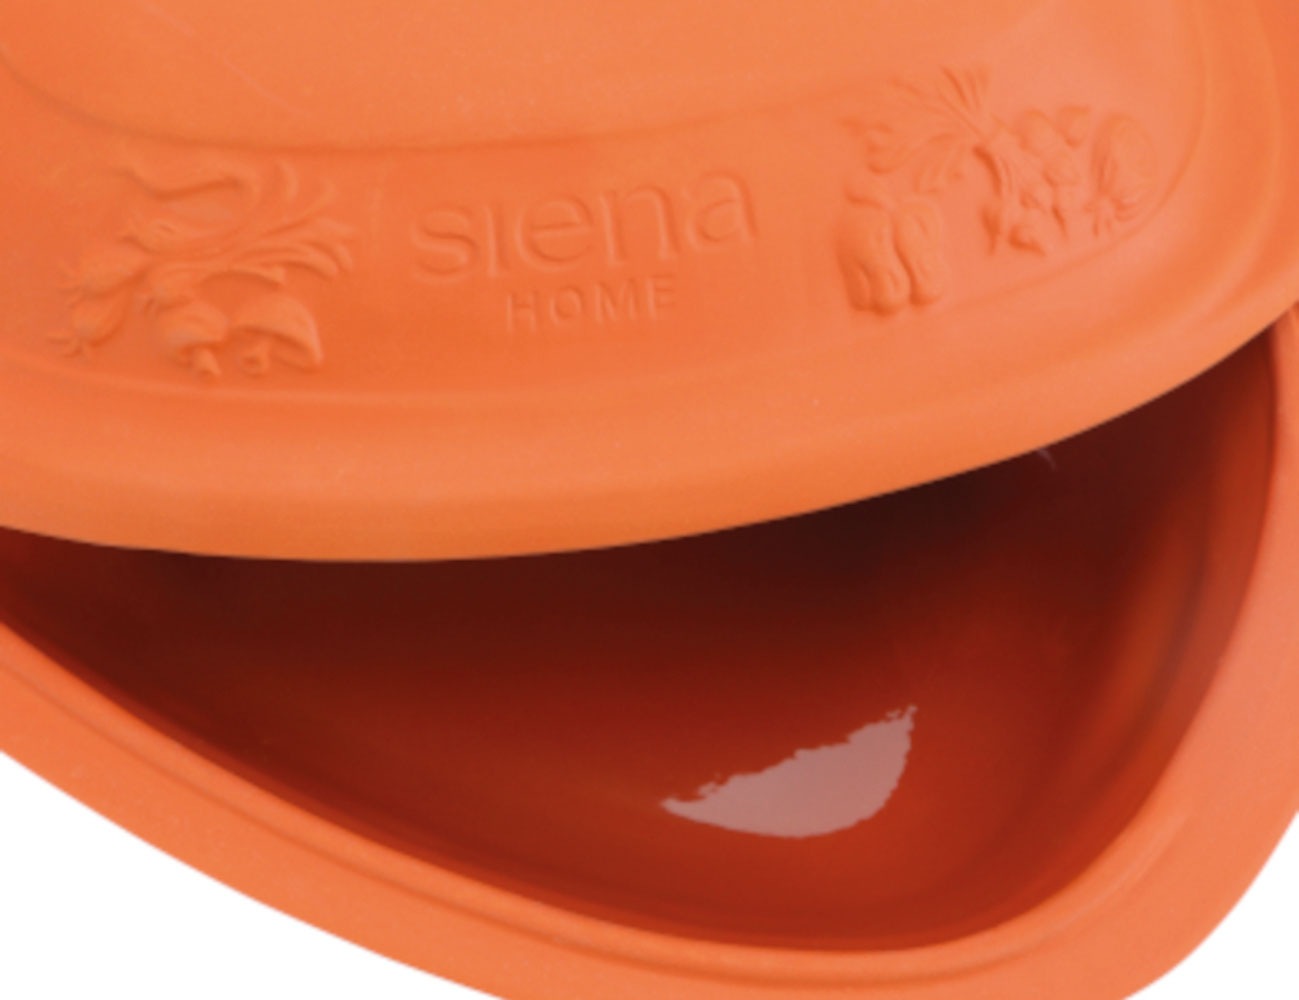 Siena Home Bräter »Caldo«, Ton, 5,0 kg für 4-6 Personen